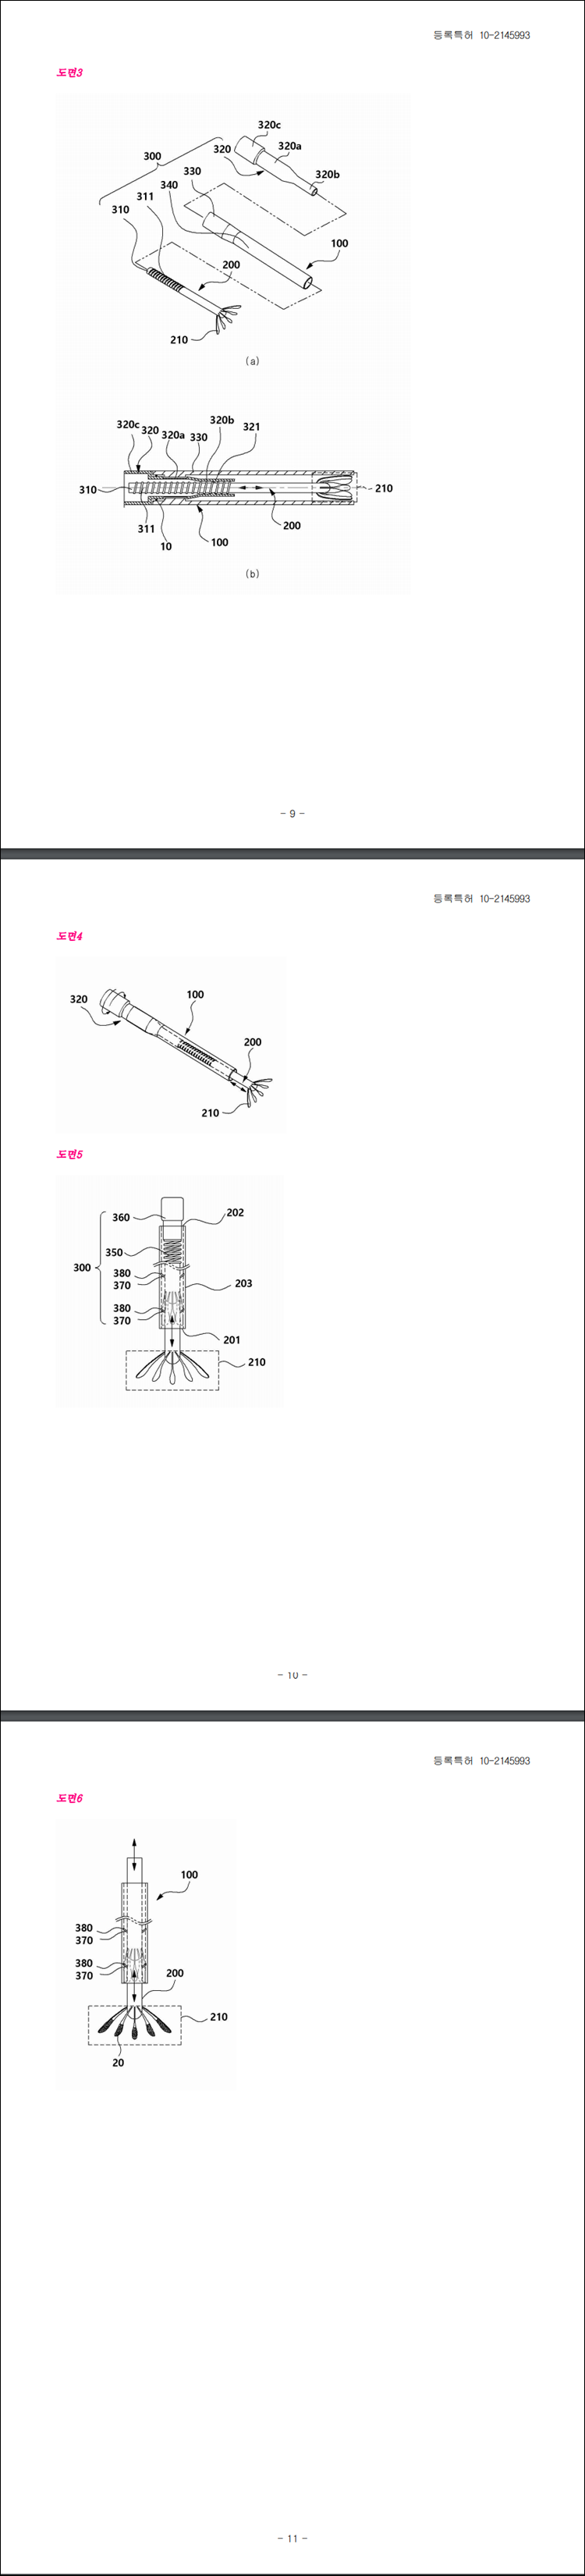 특허 제10-2145993호(귀지 제거장치, 김광수, 